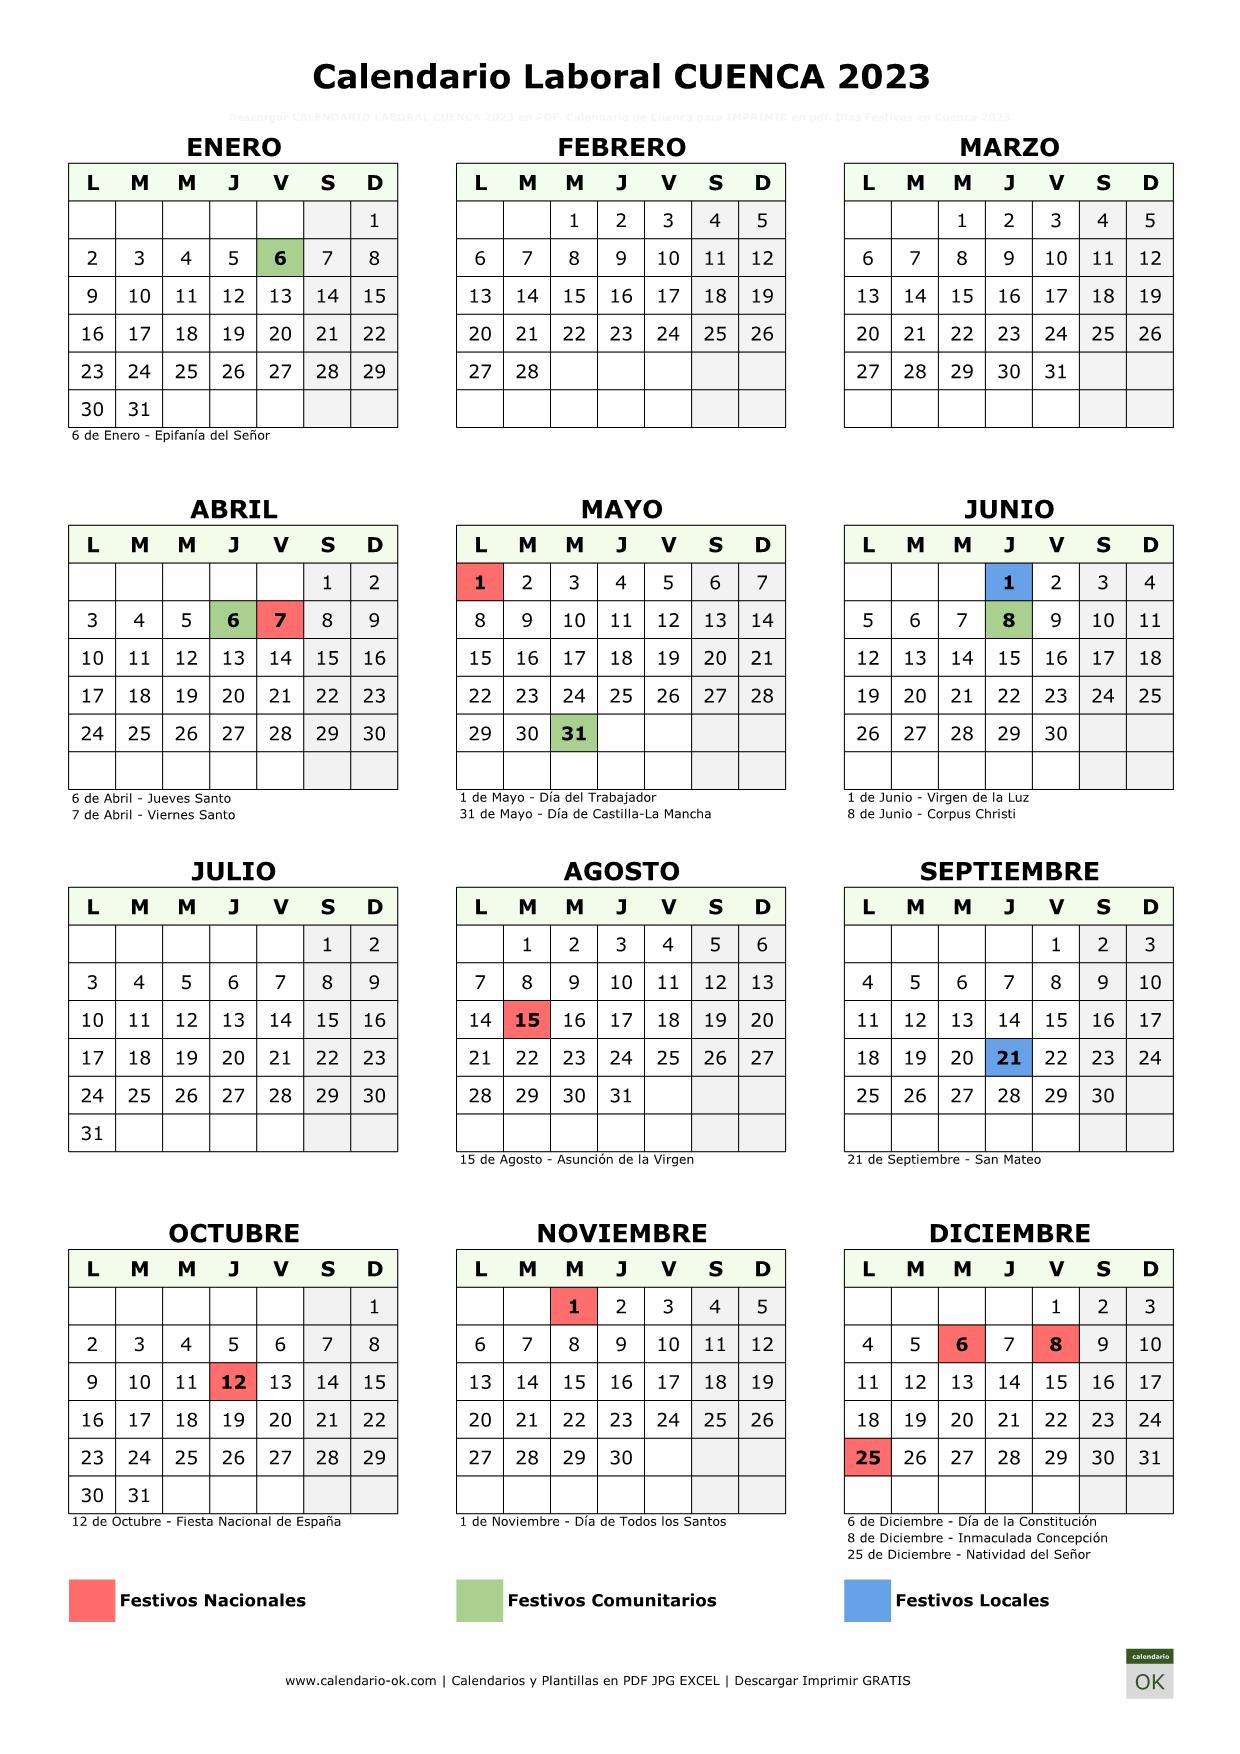 Calendario Laboral Cuenca 2023 vertical